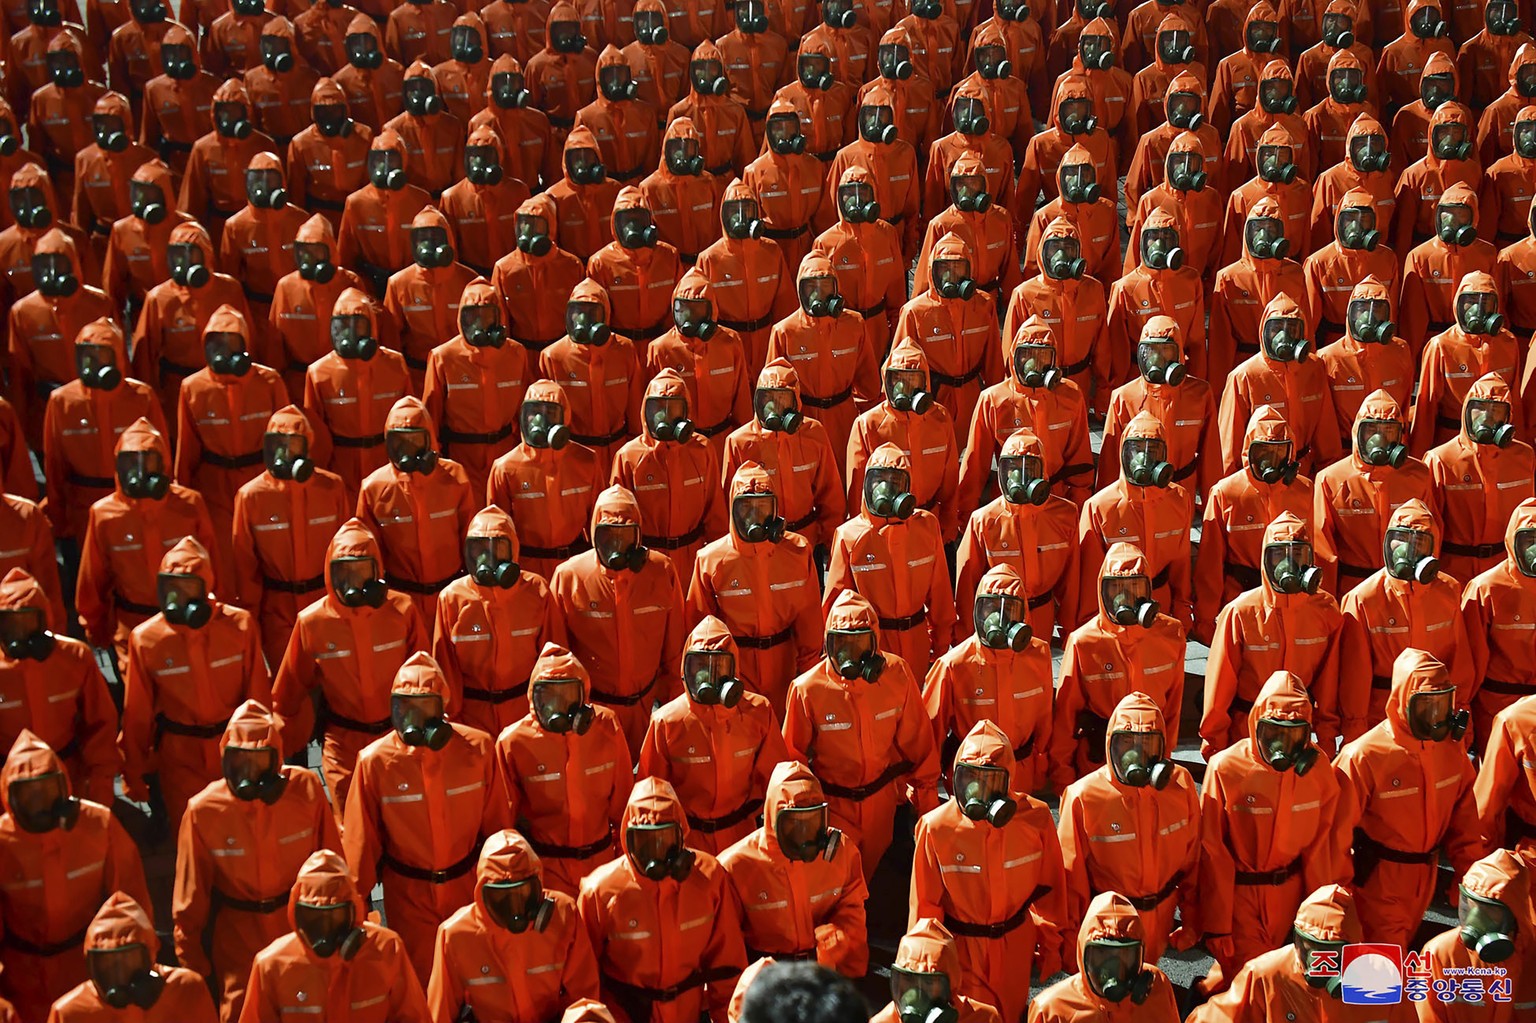 Kein Bild von Kim, aber trotzdem eindrücklich. Armeeangehörige in orangen Schutzanzügen. 